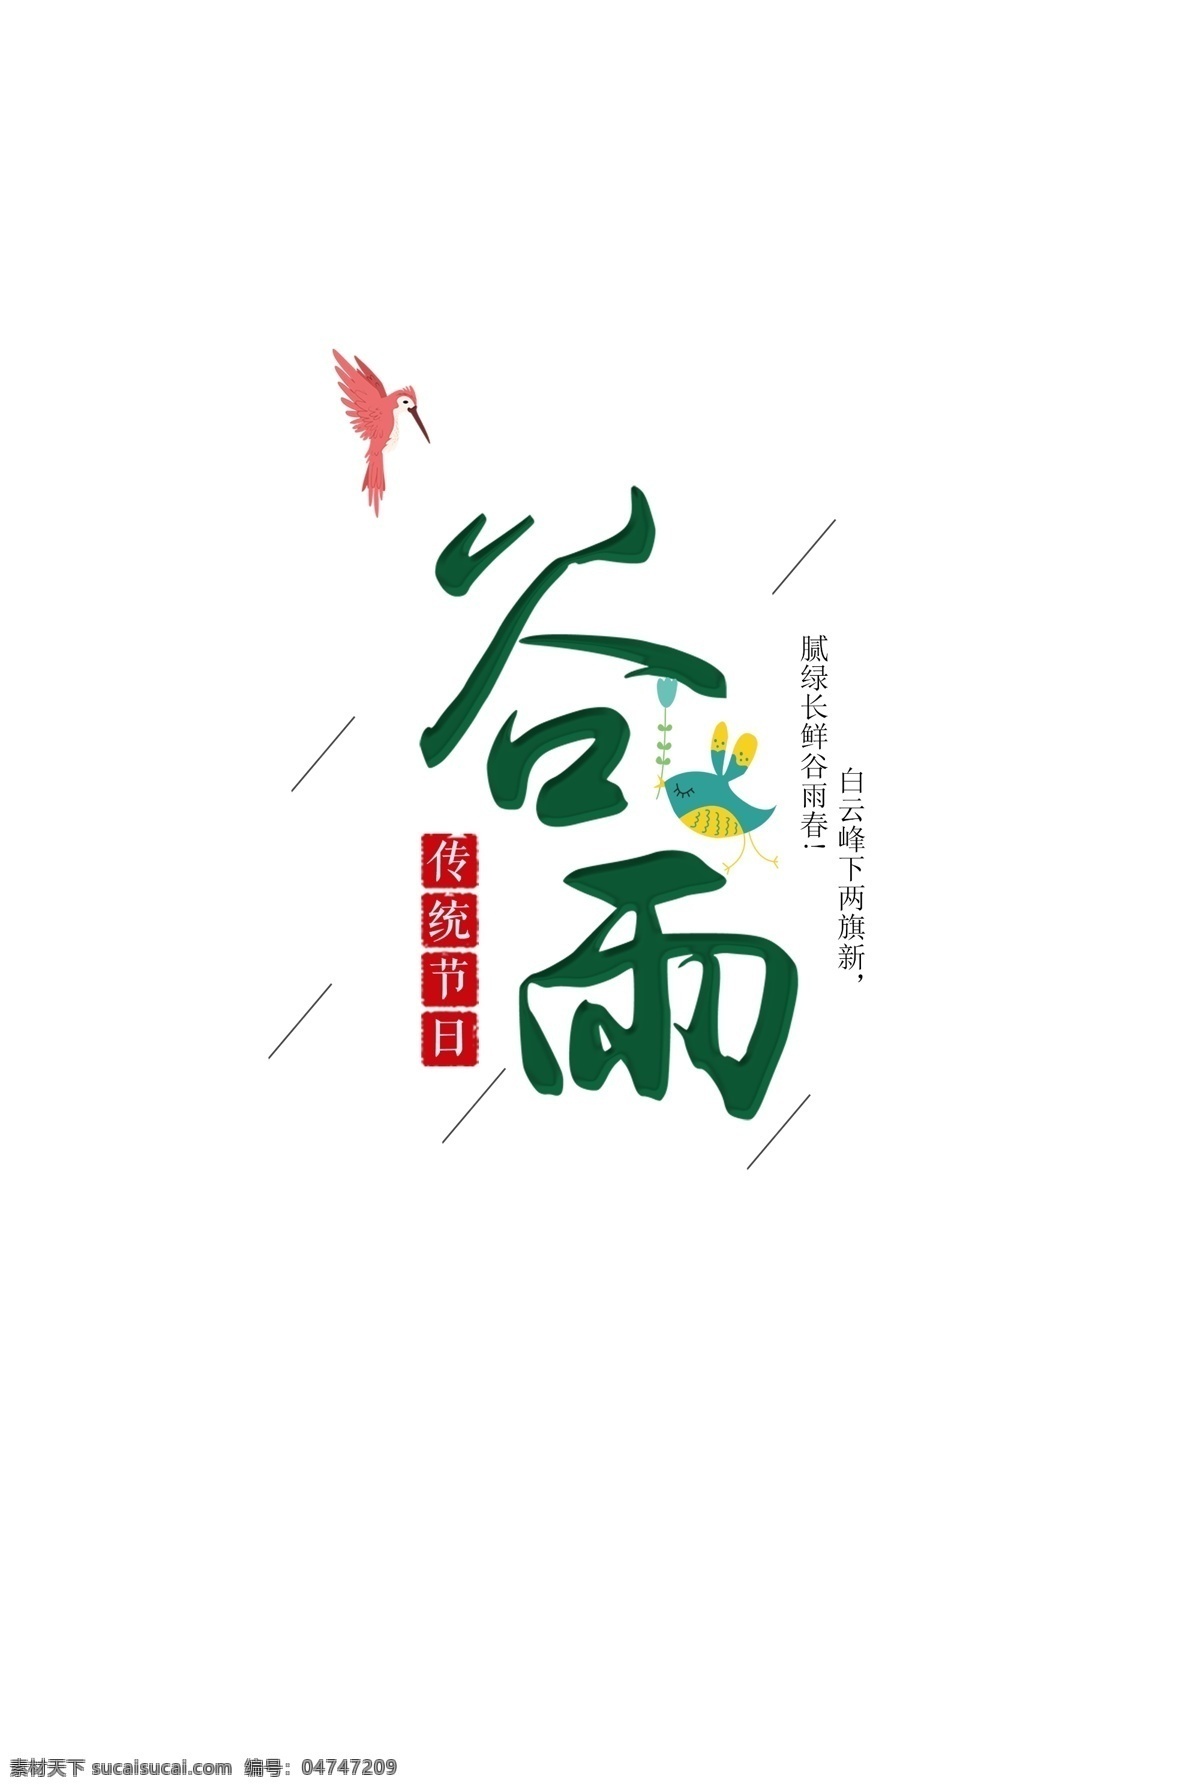 创意 传统 谷雨 节气 元素 传统节日 二十四节气 节日元素 春季 绿色字体 谷雨节气 免抠图 中国传统节气 谷雨风俗 惊蛰